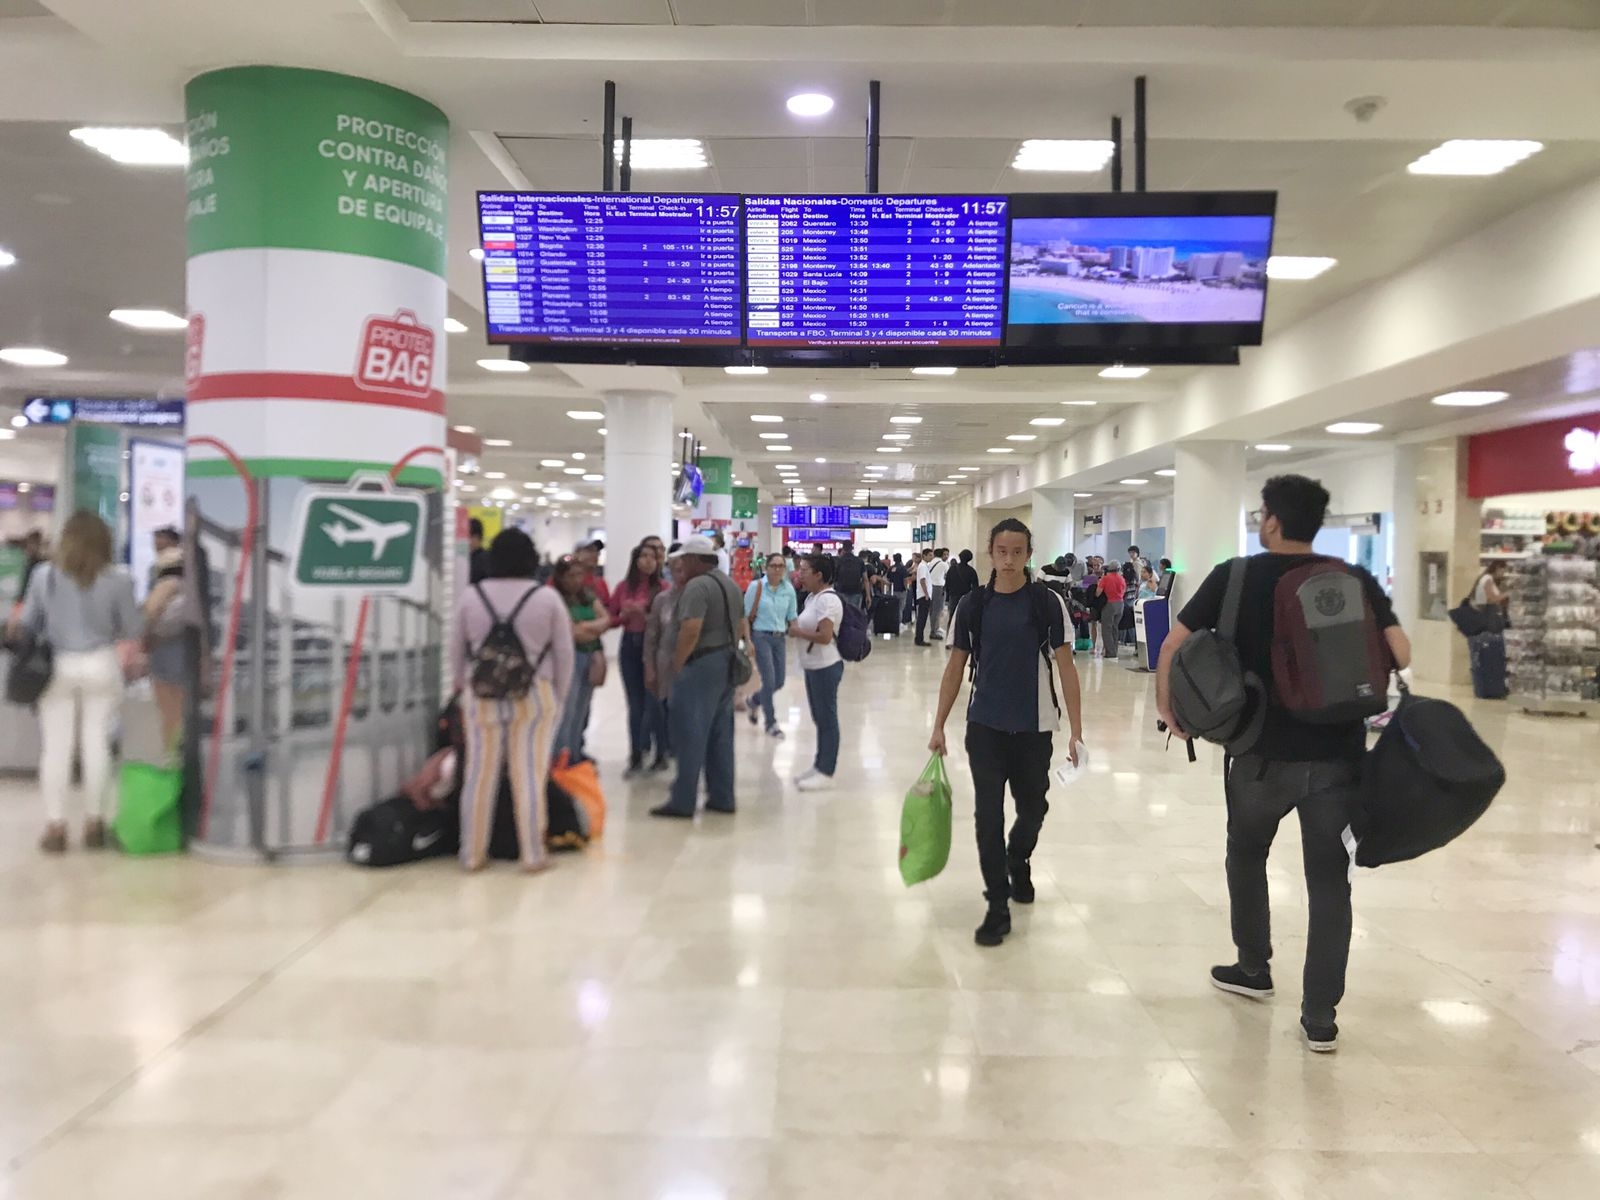 Aeromar suspende vuelo a Chetumal desde el aeropuerto de Cancún: EN VIVO